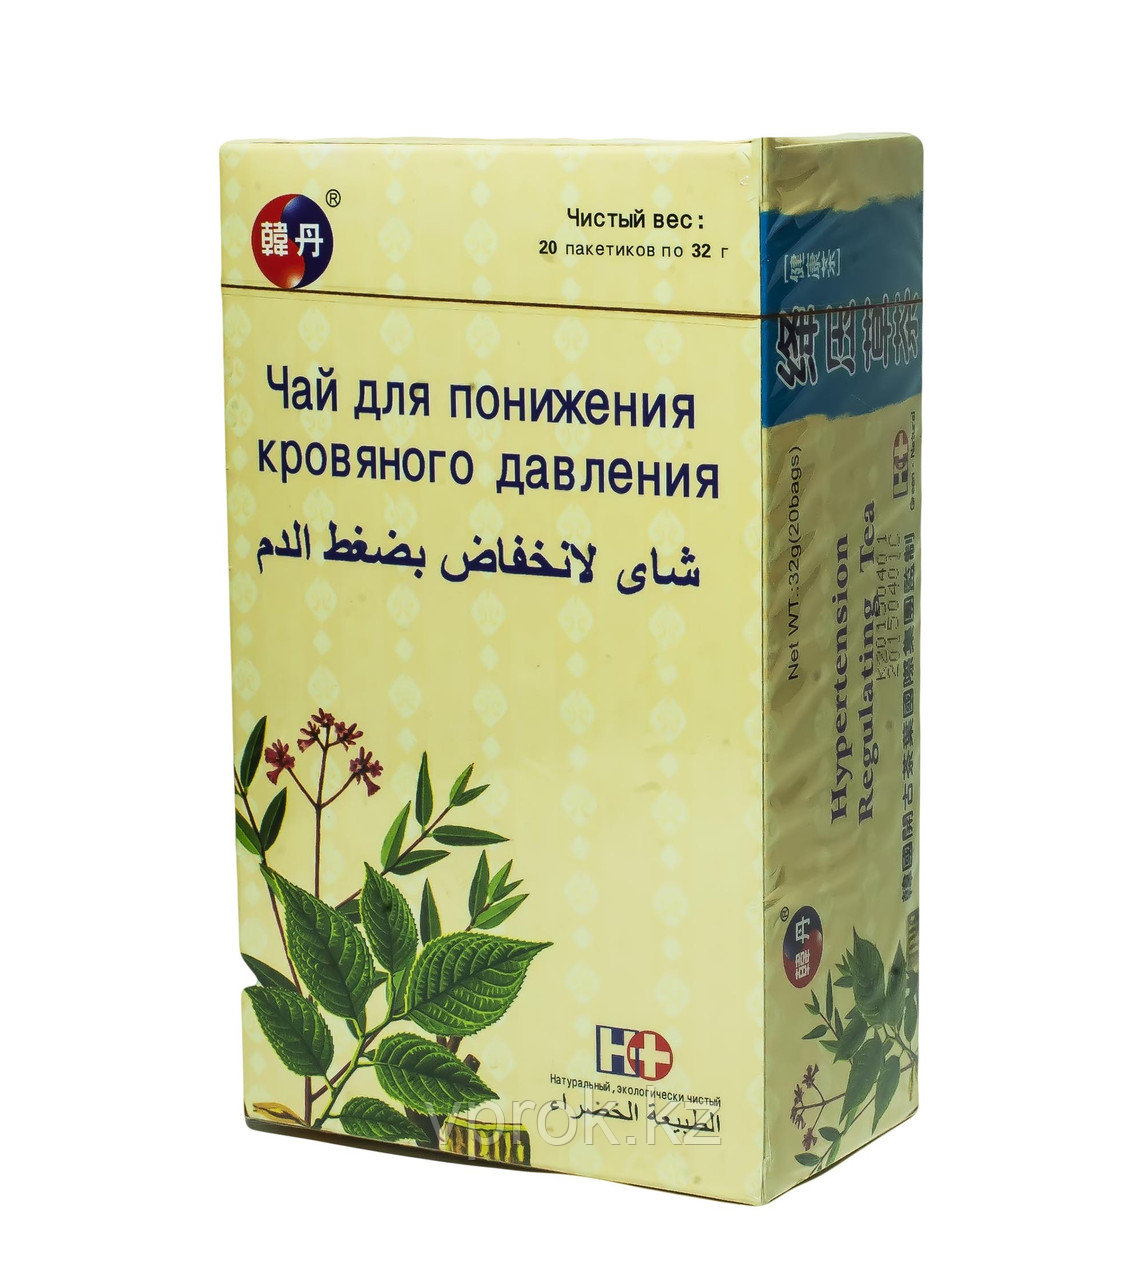 Фито-чай для понижения кровяного давления, 640 г